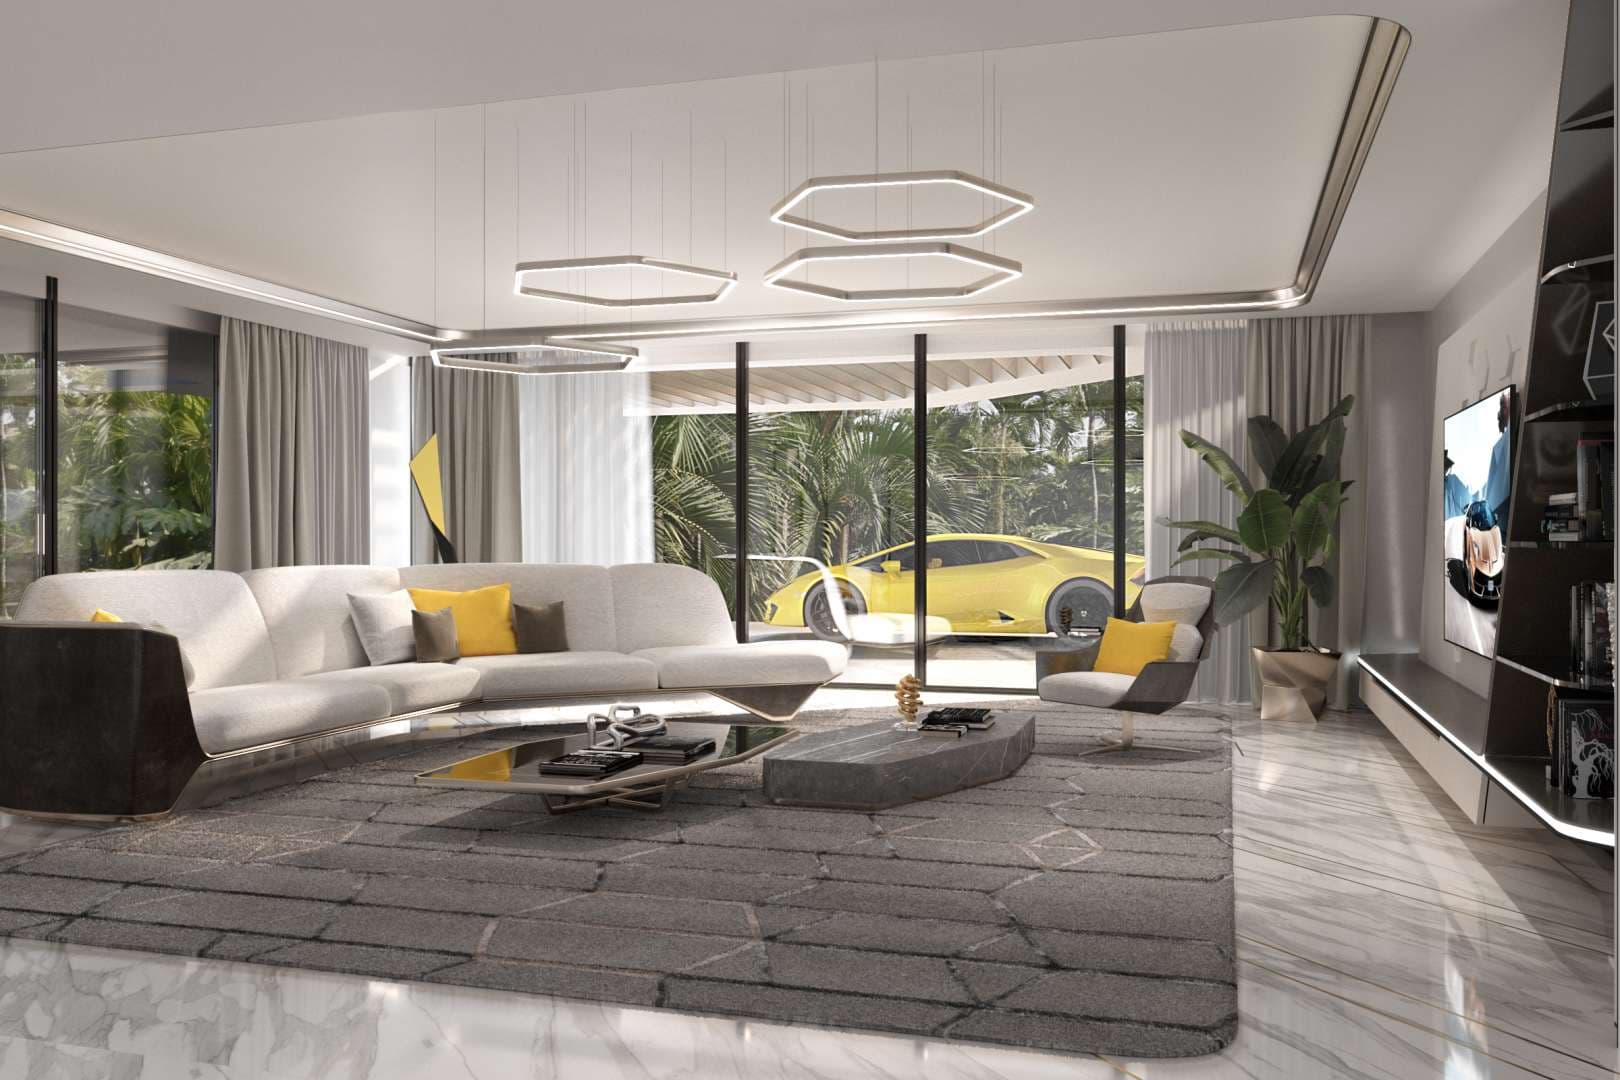 6 Bedroom Villa For Sale Dubai Hills Vista Lp07557 4dd048ba8fd3ec0.jpg